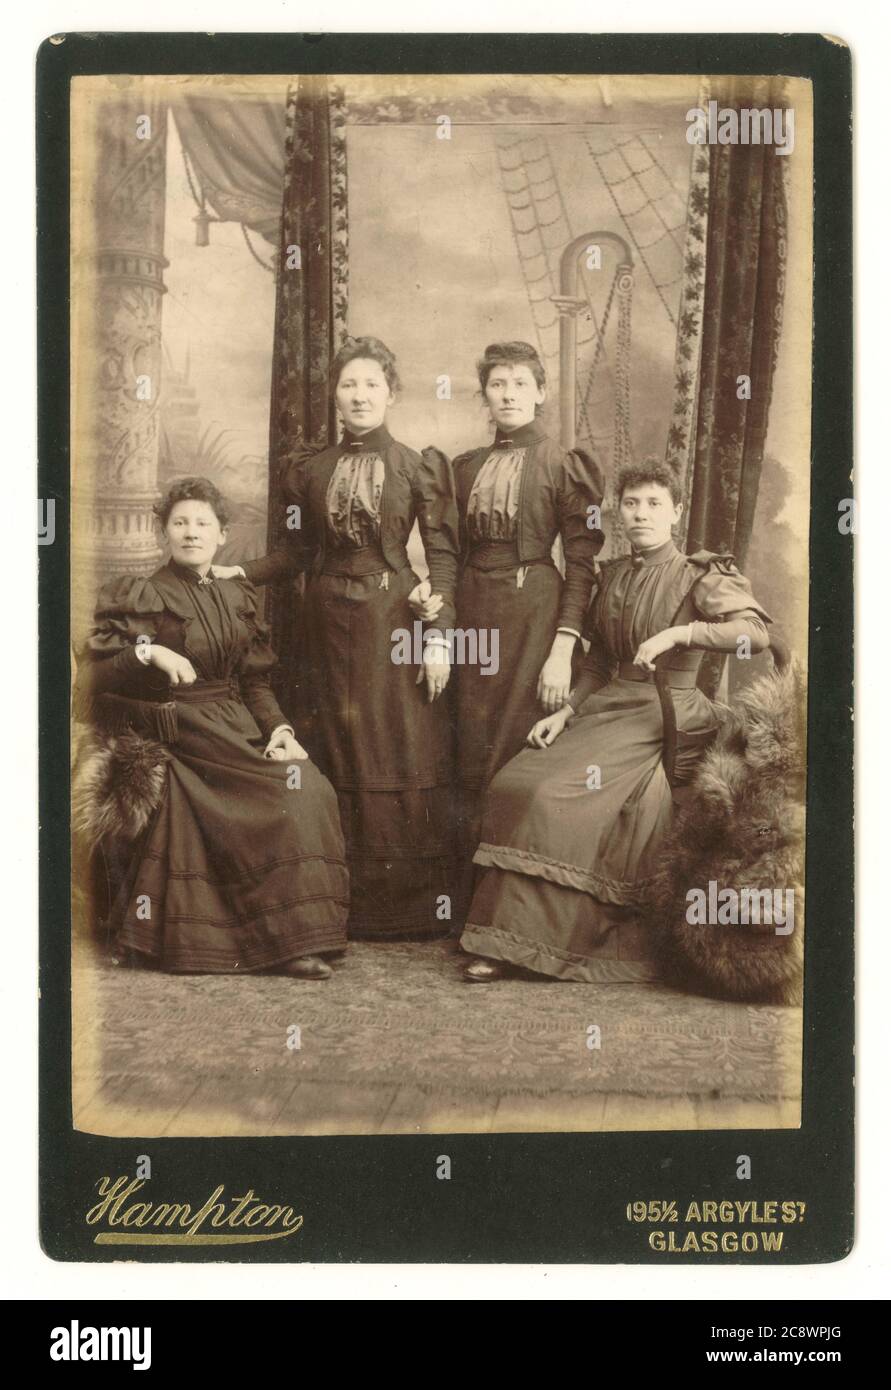 Carte de l'armoire victorienne de quatre femmes éventuellement liées, avec toile de fond élaborée, vers 1894, Hampton studio, Argyle St. Glasgow,Écosse, Royaume-Uni Banque D'Images